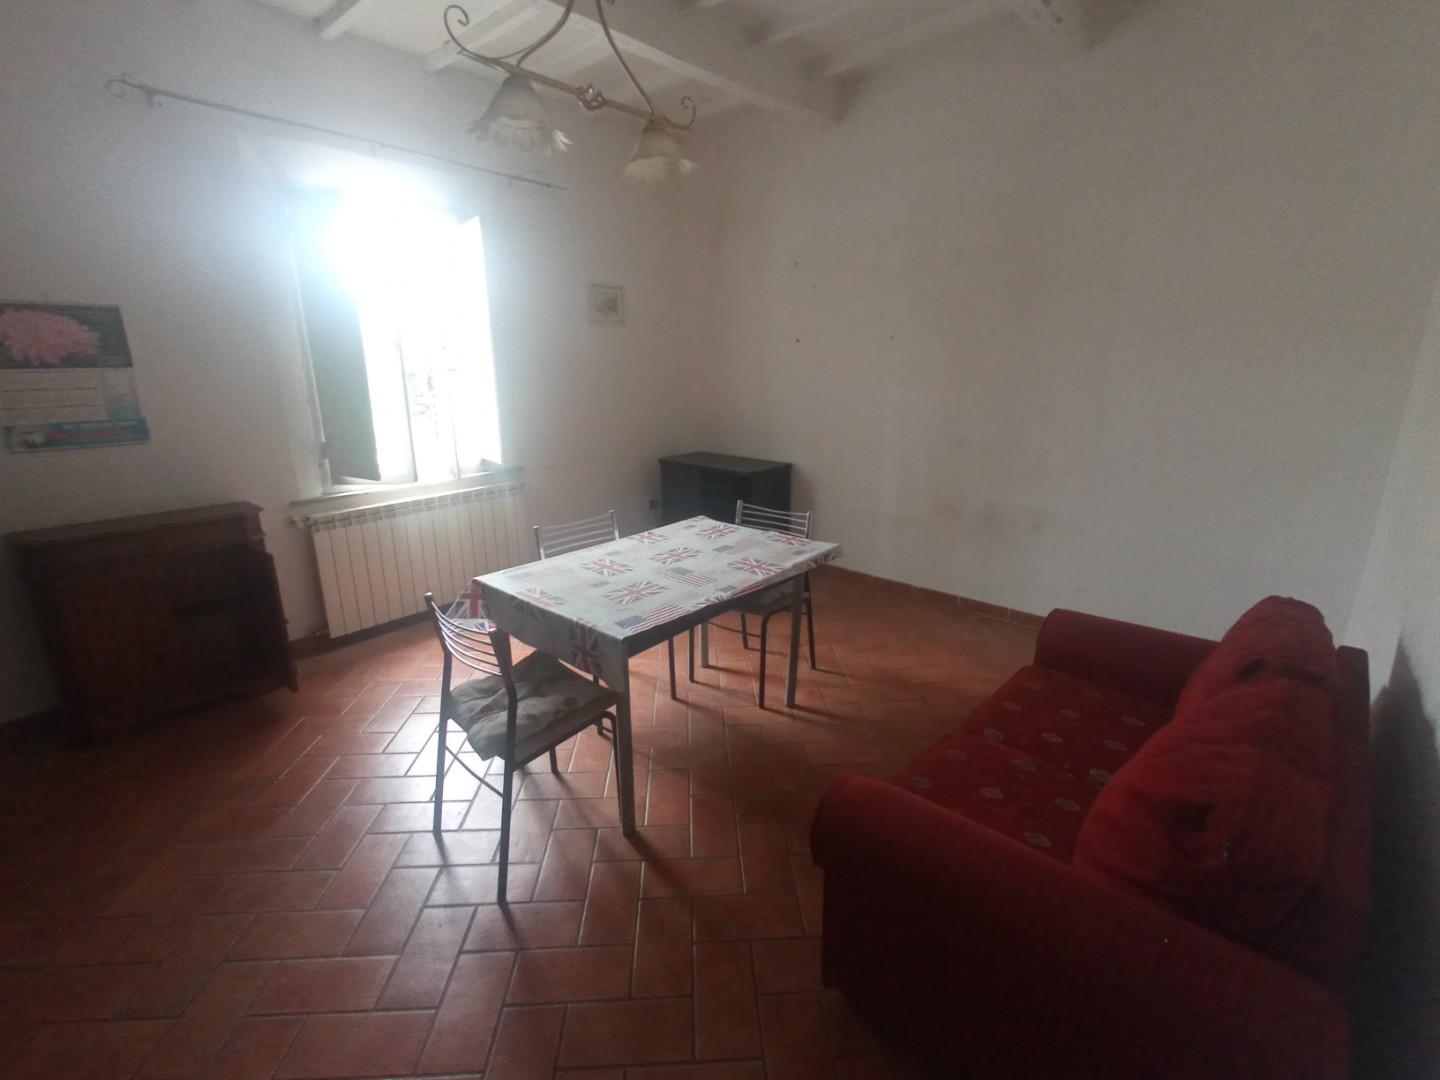 Appartamento in vendita a Montopoli in Val d'Arno, 3 locali, prezzo € 82.000 | PortaleAgenzieImmobiliari.it